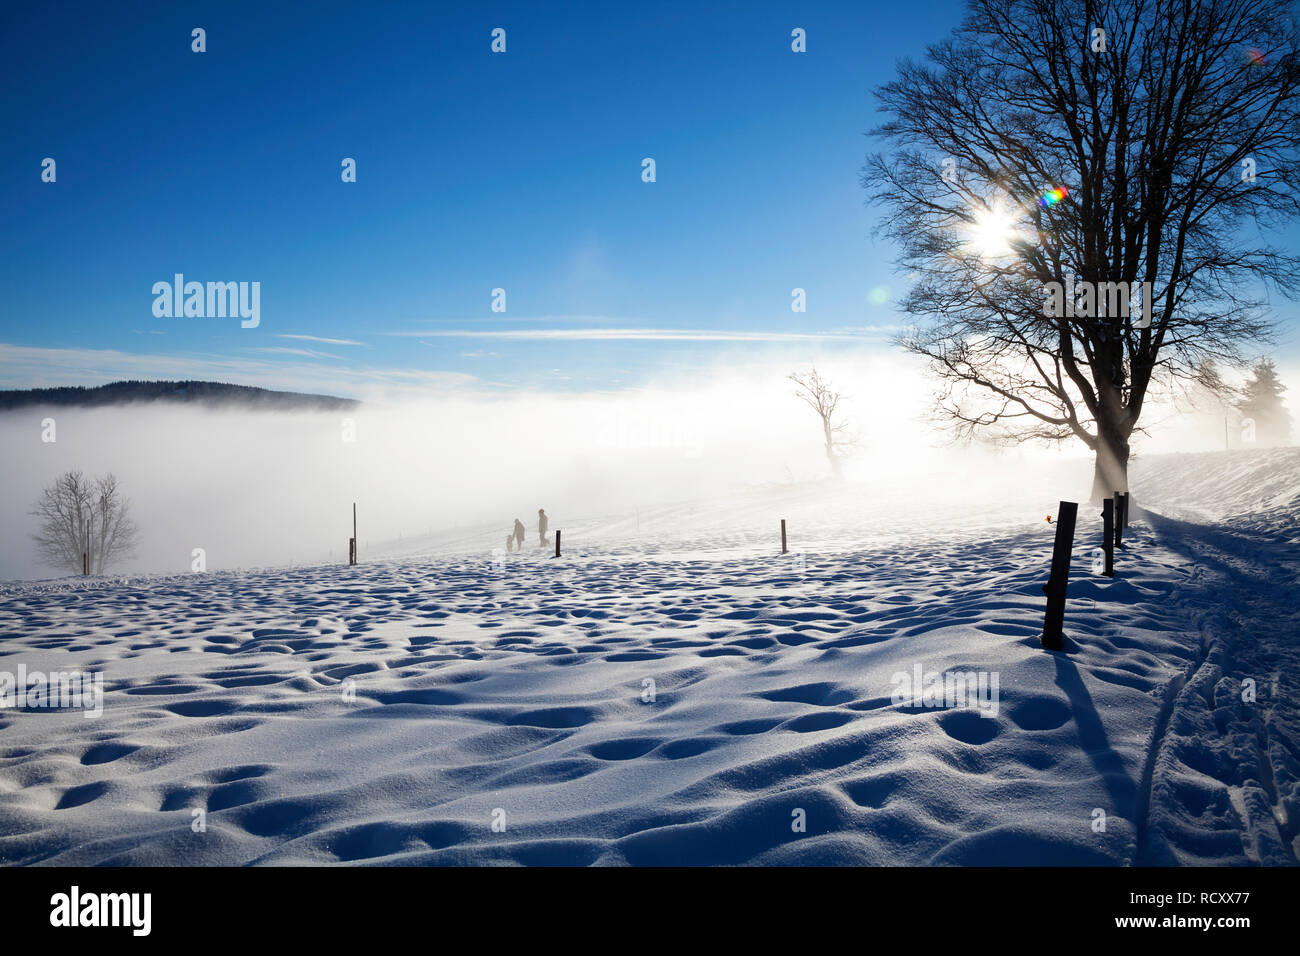 Wintertag am Schauinsland, Schwarzwald Stock Photo